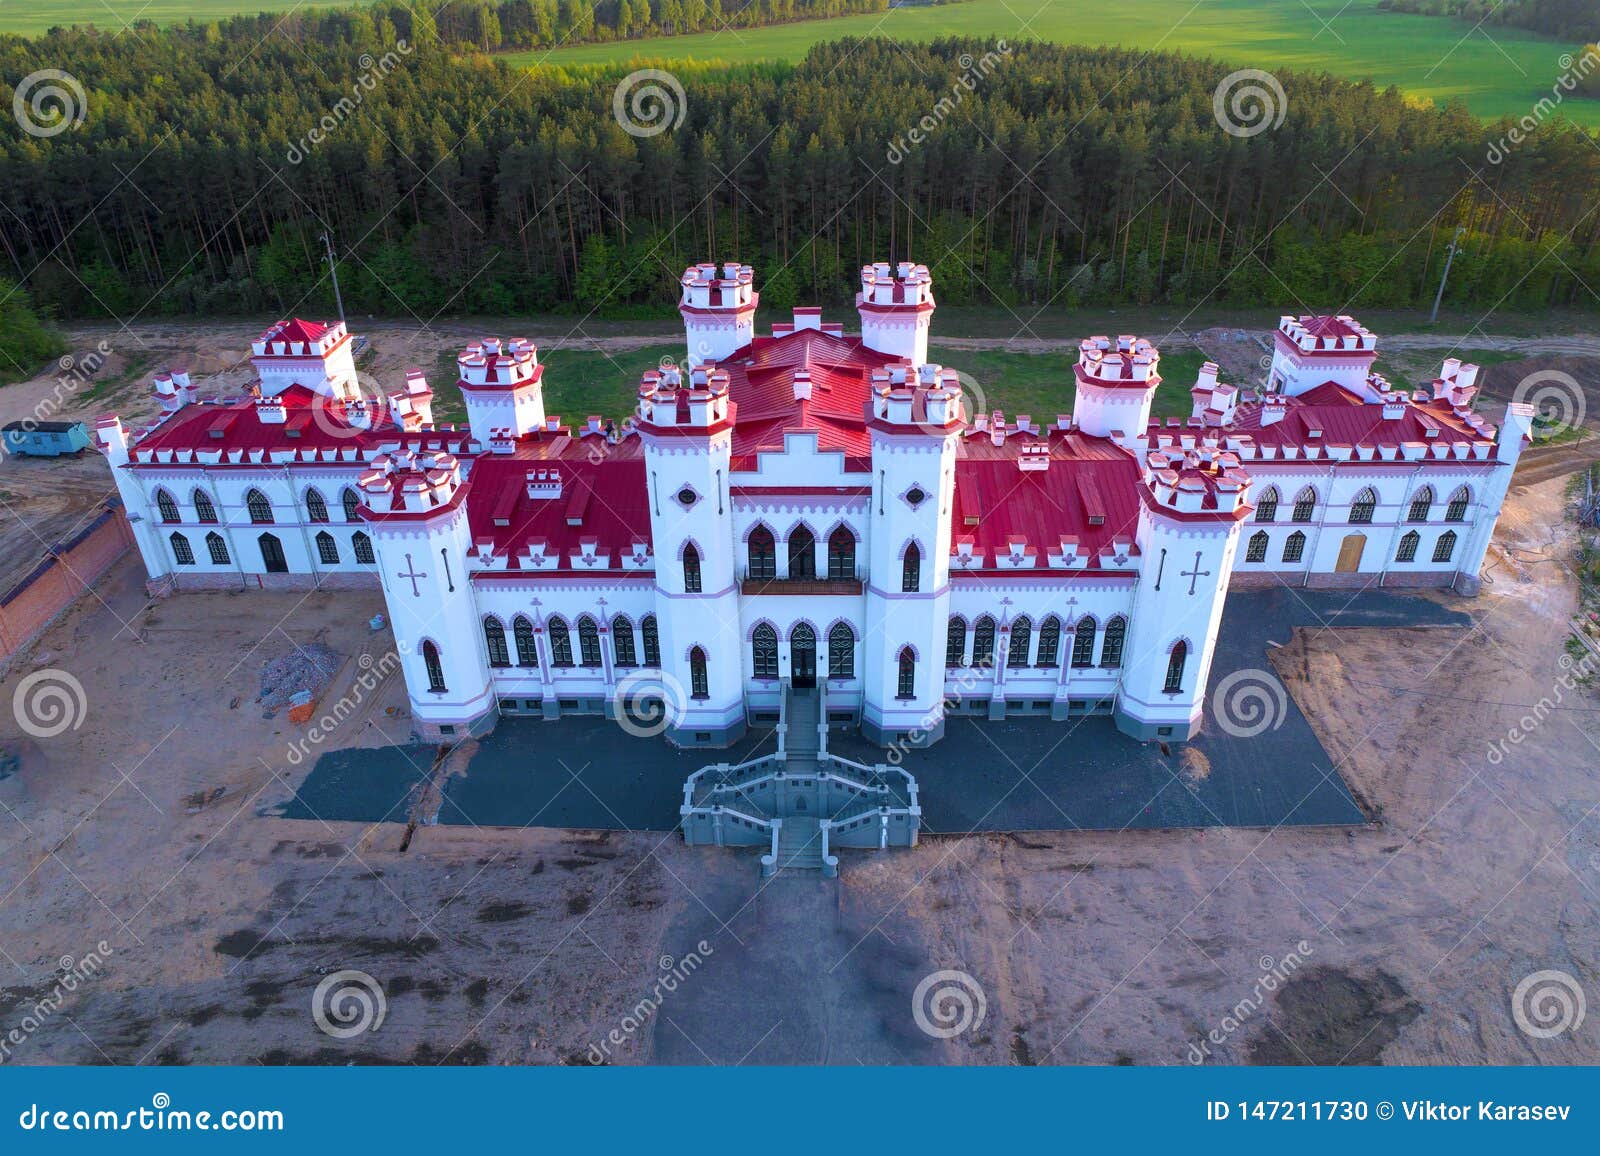 restored ancient castle-palace of puslovsky. kossovo, belarus